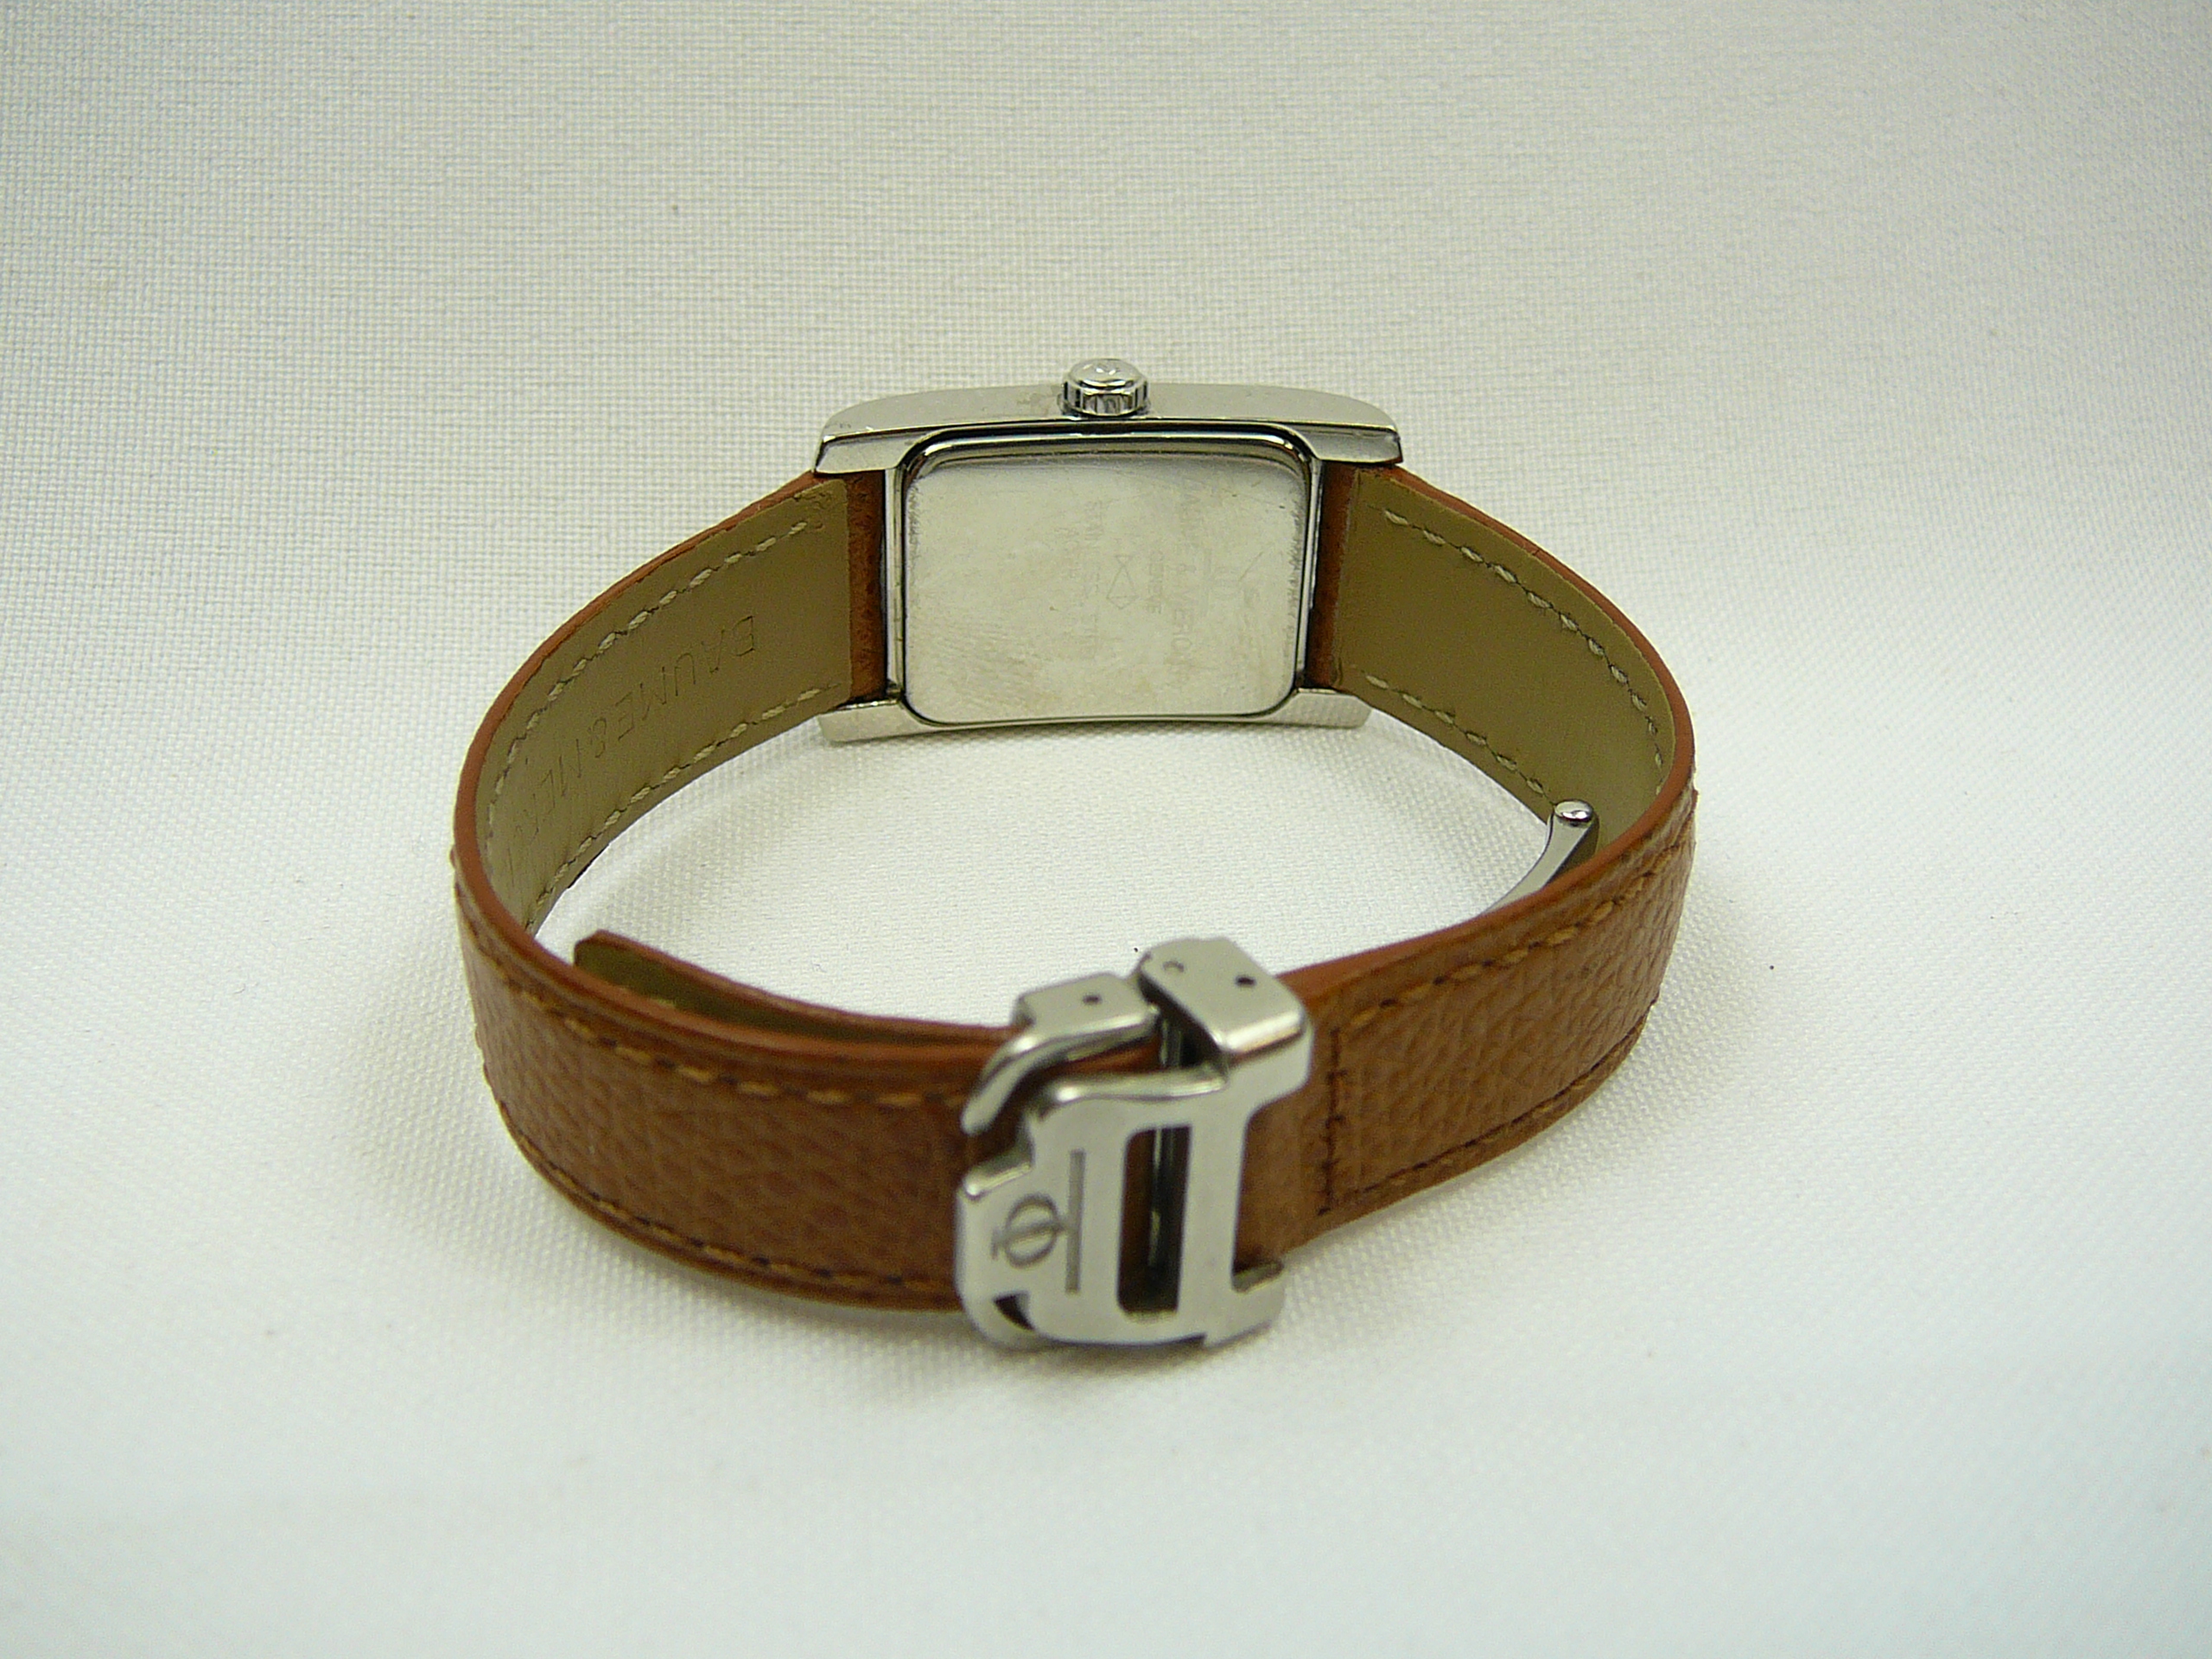 Ladies Baume & Mercier Wrist Watch - Image 3 of 3